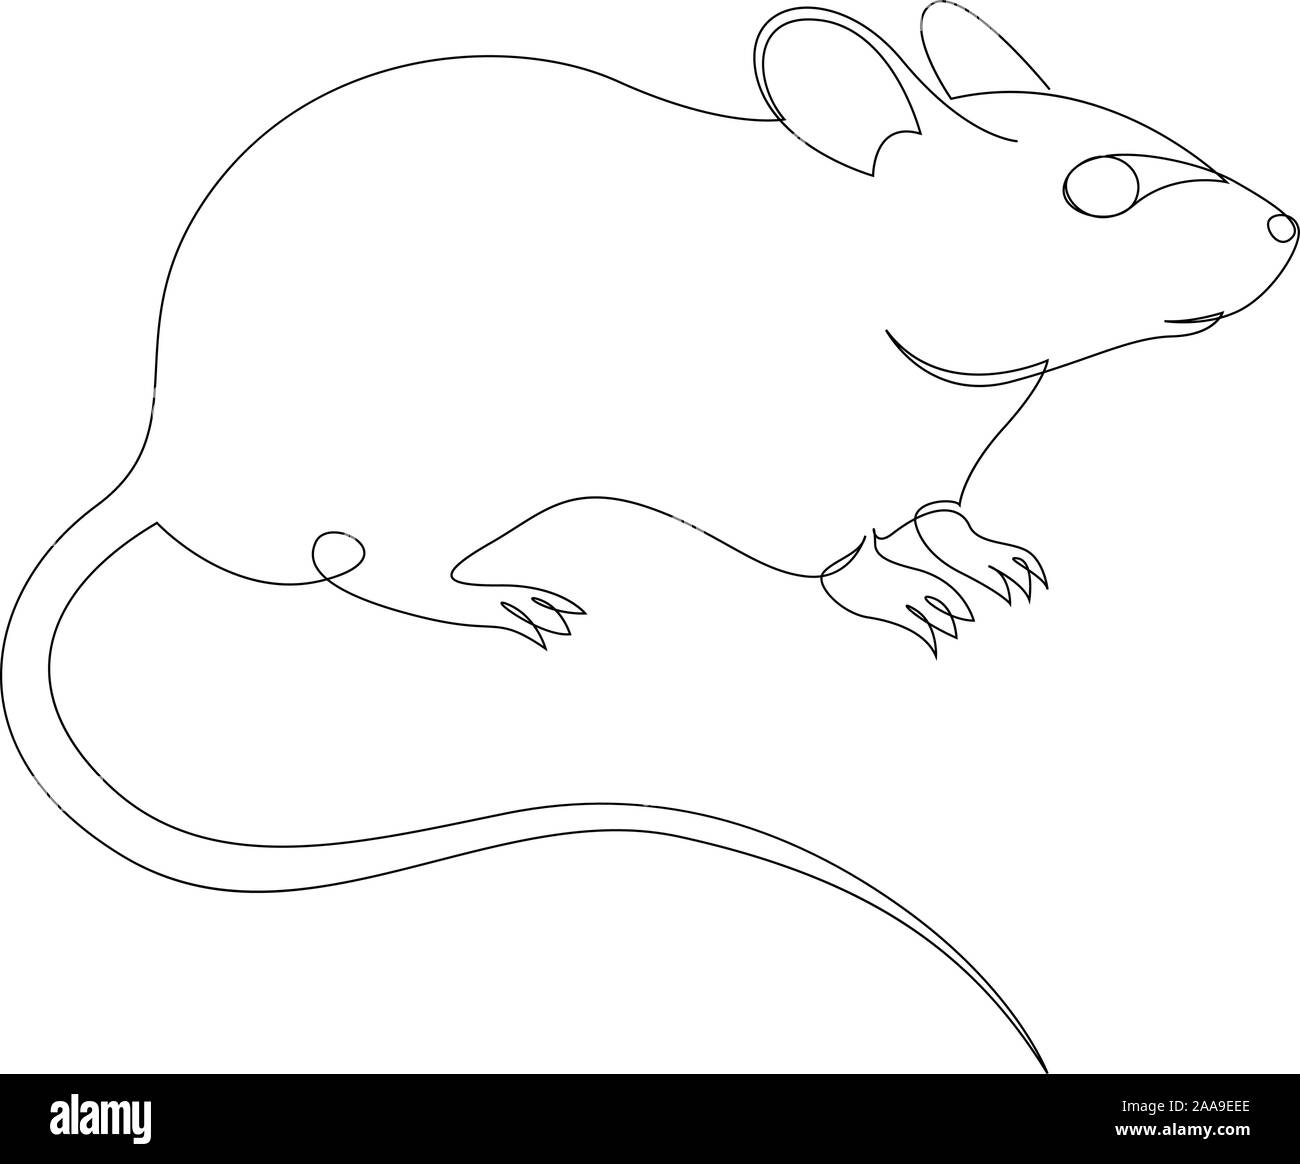 Kontinuierliche eine Linie Zeichnen von Ratte oder Maus. Vektor Stock Vektor